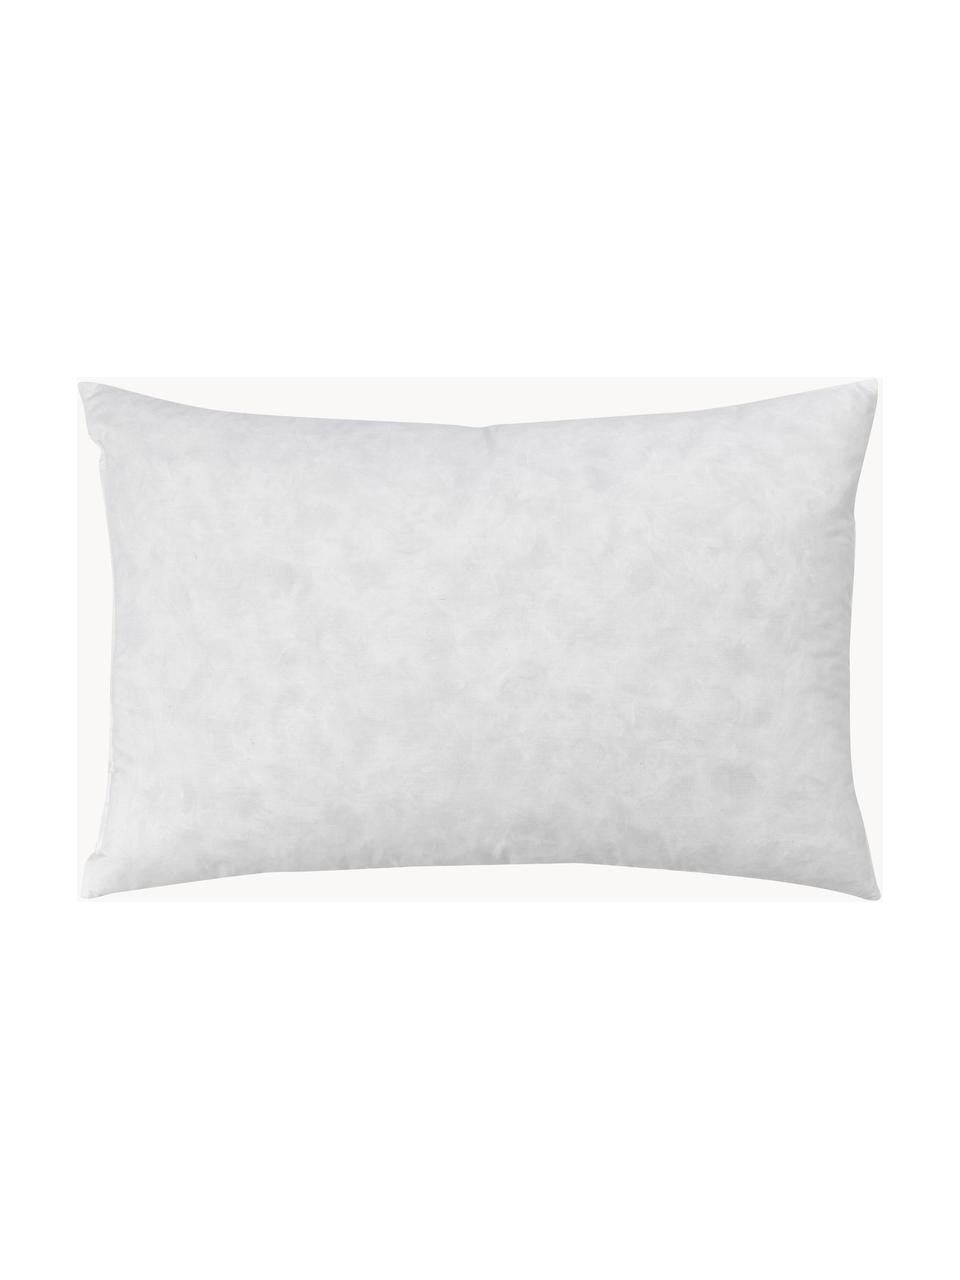 Wkład do poduszki dekoracyjnej Comfort, różne rozmiary, Biały, S 30 x D 50 cm